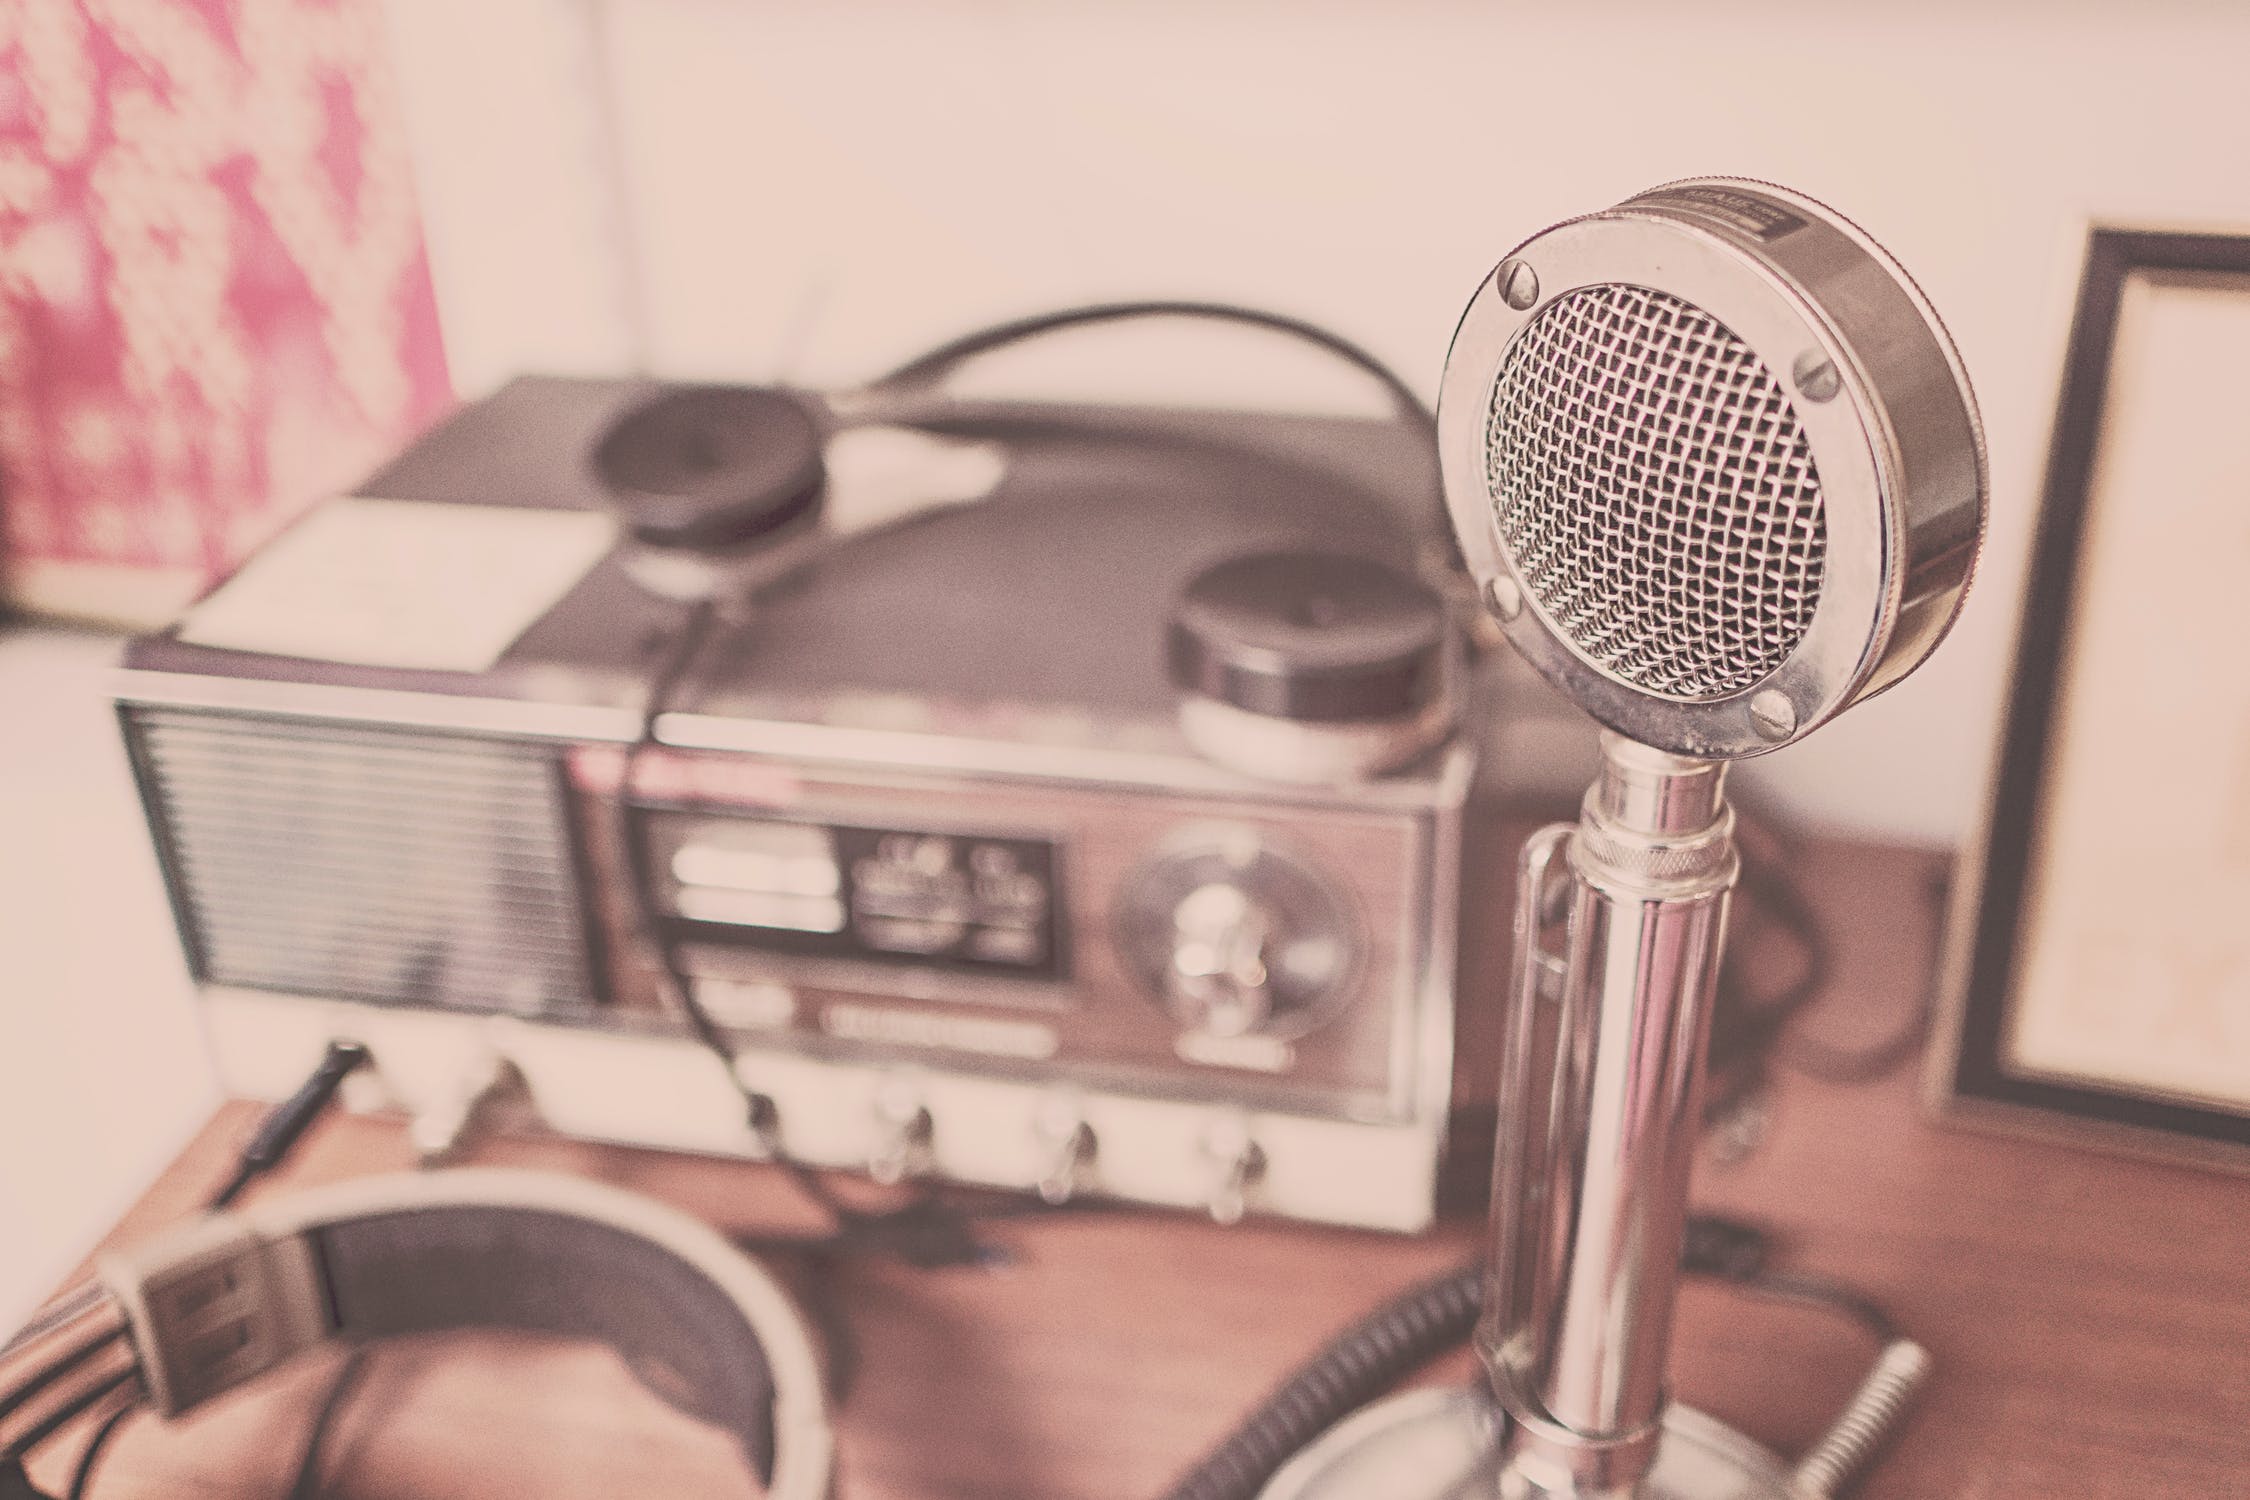 Cómo grabar audio profesional en casa. Grabar voz profesional, trucos y consejos para grabar voz en estudio